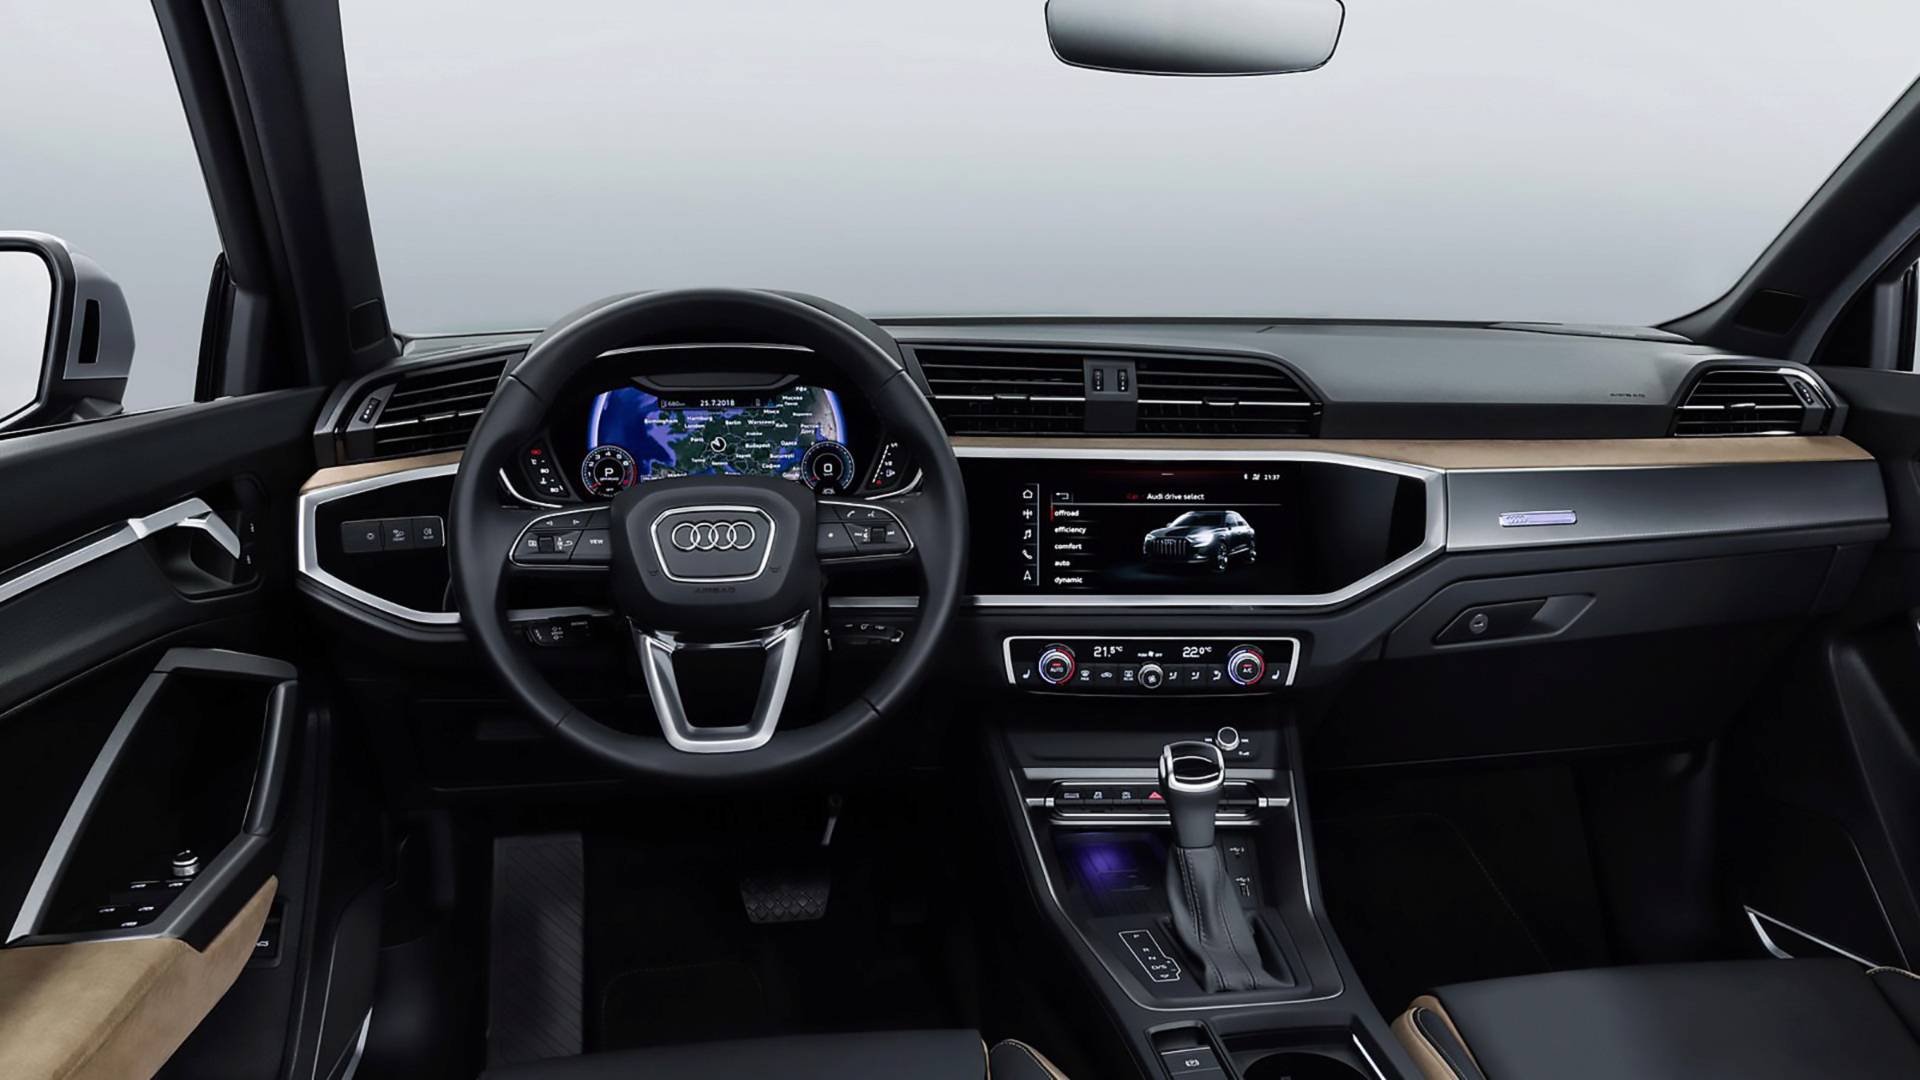 Đánh giá xe Audi Q3 về nội thất